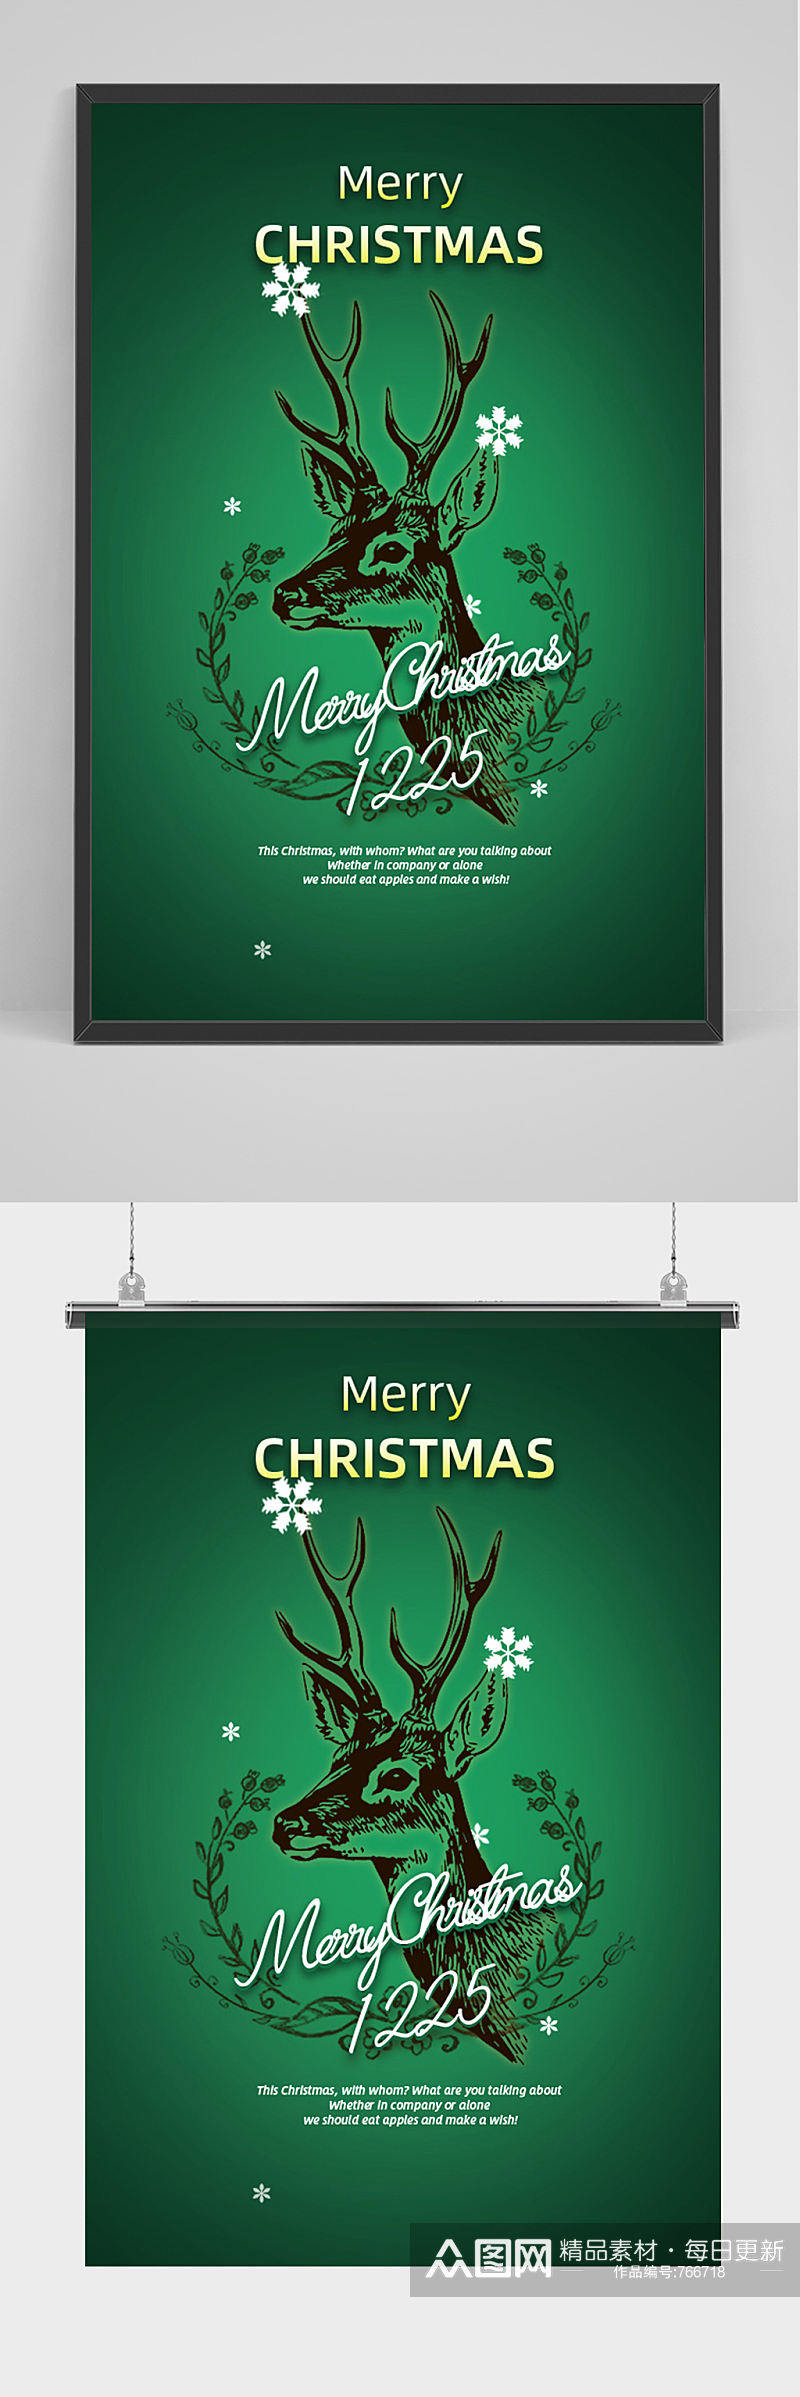 圣诞促销大气简洁创意海报素材